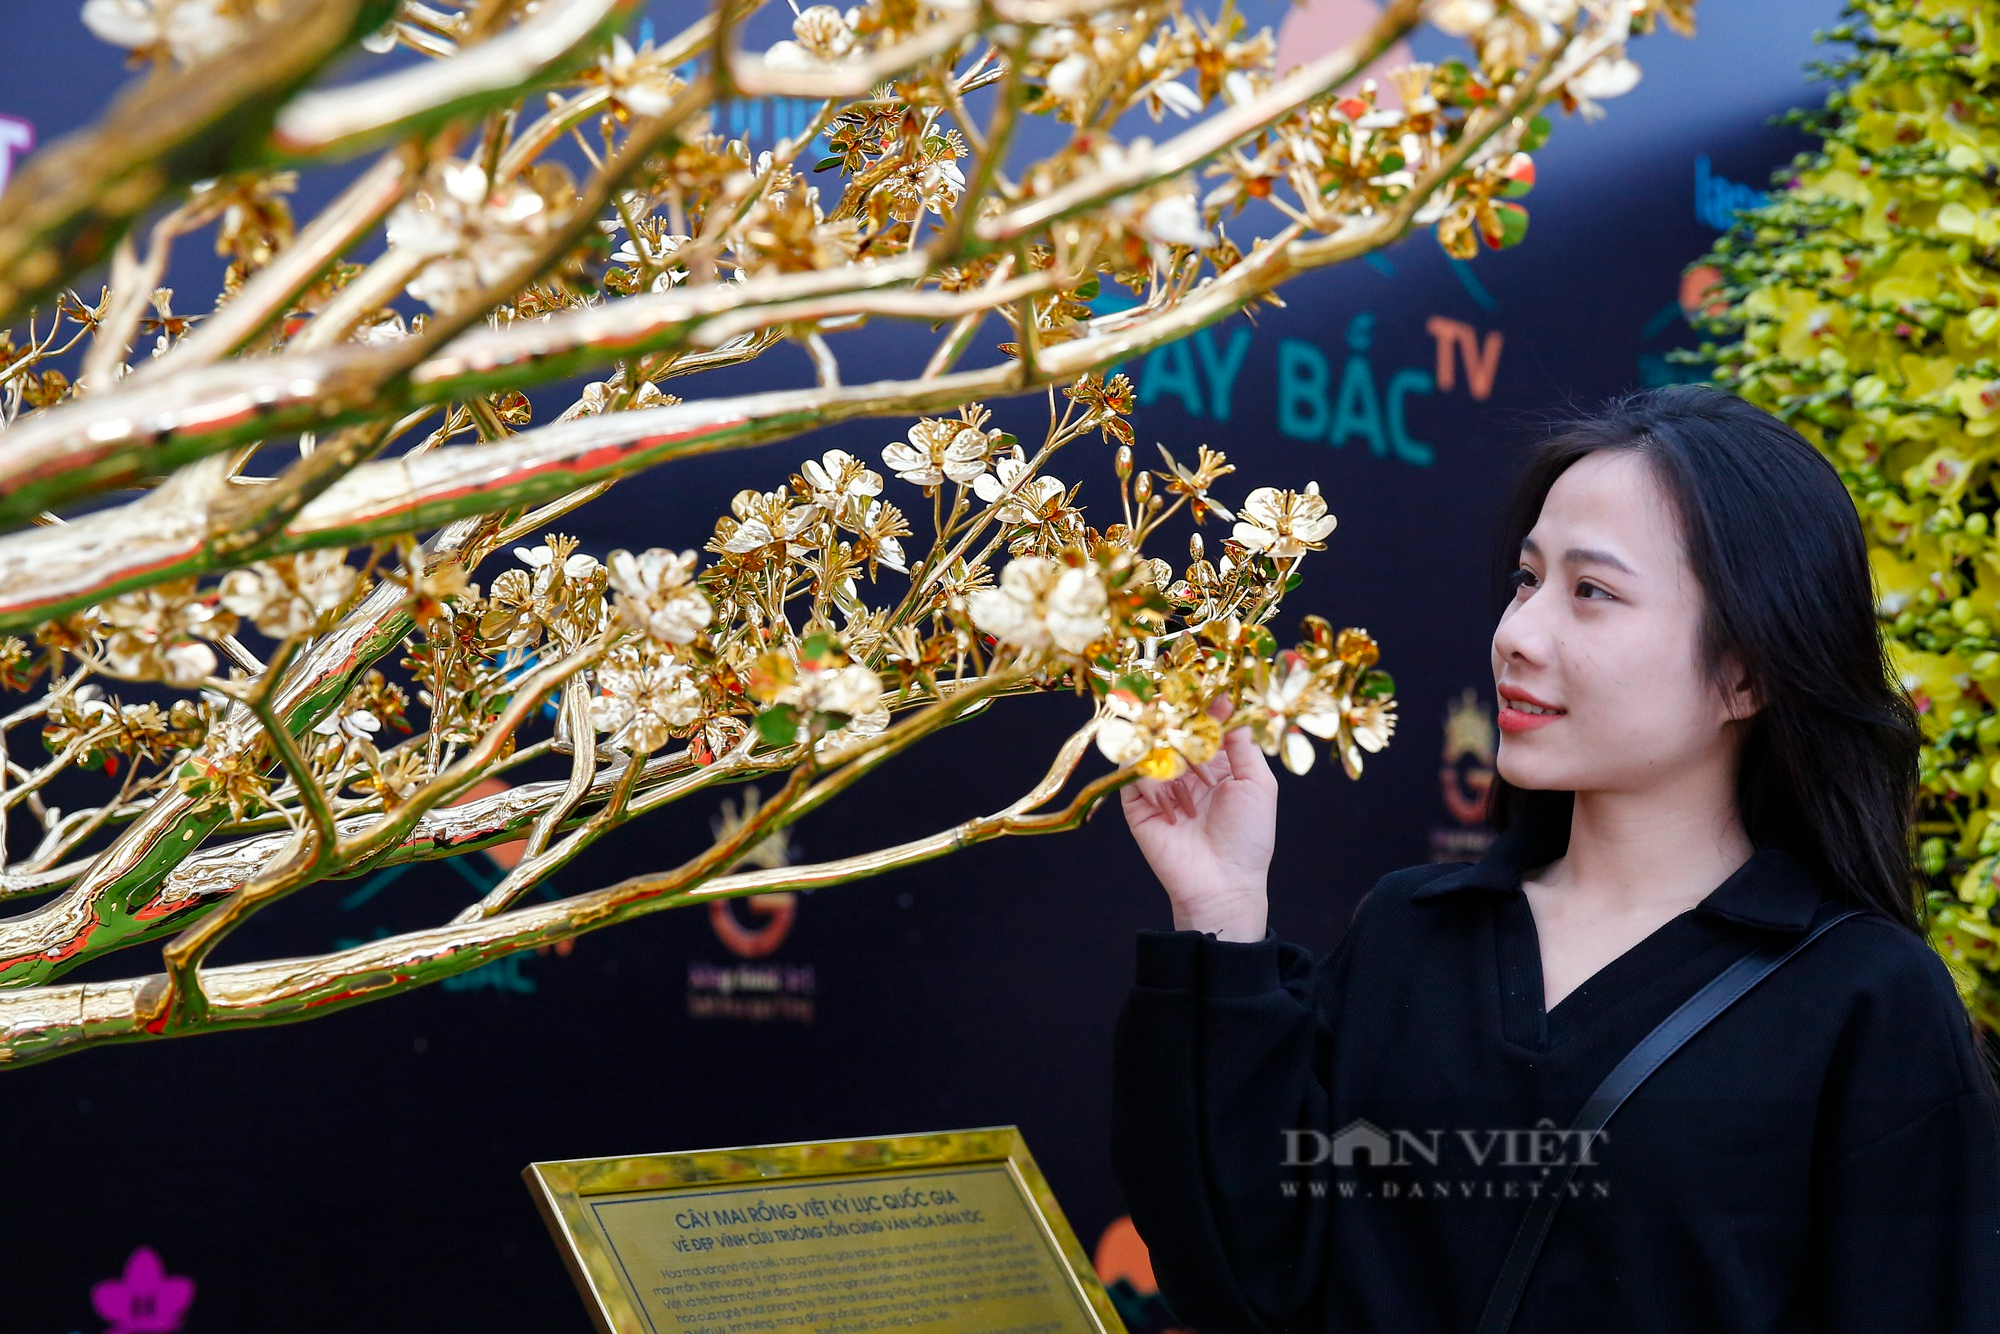 Ngắm cây mai mạ vàng 24k lớn nhất Việt Nam được chào bán 5,5 tỷ đồng tại Hà Nội - Ảnh 3.